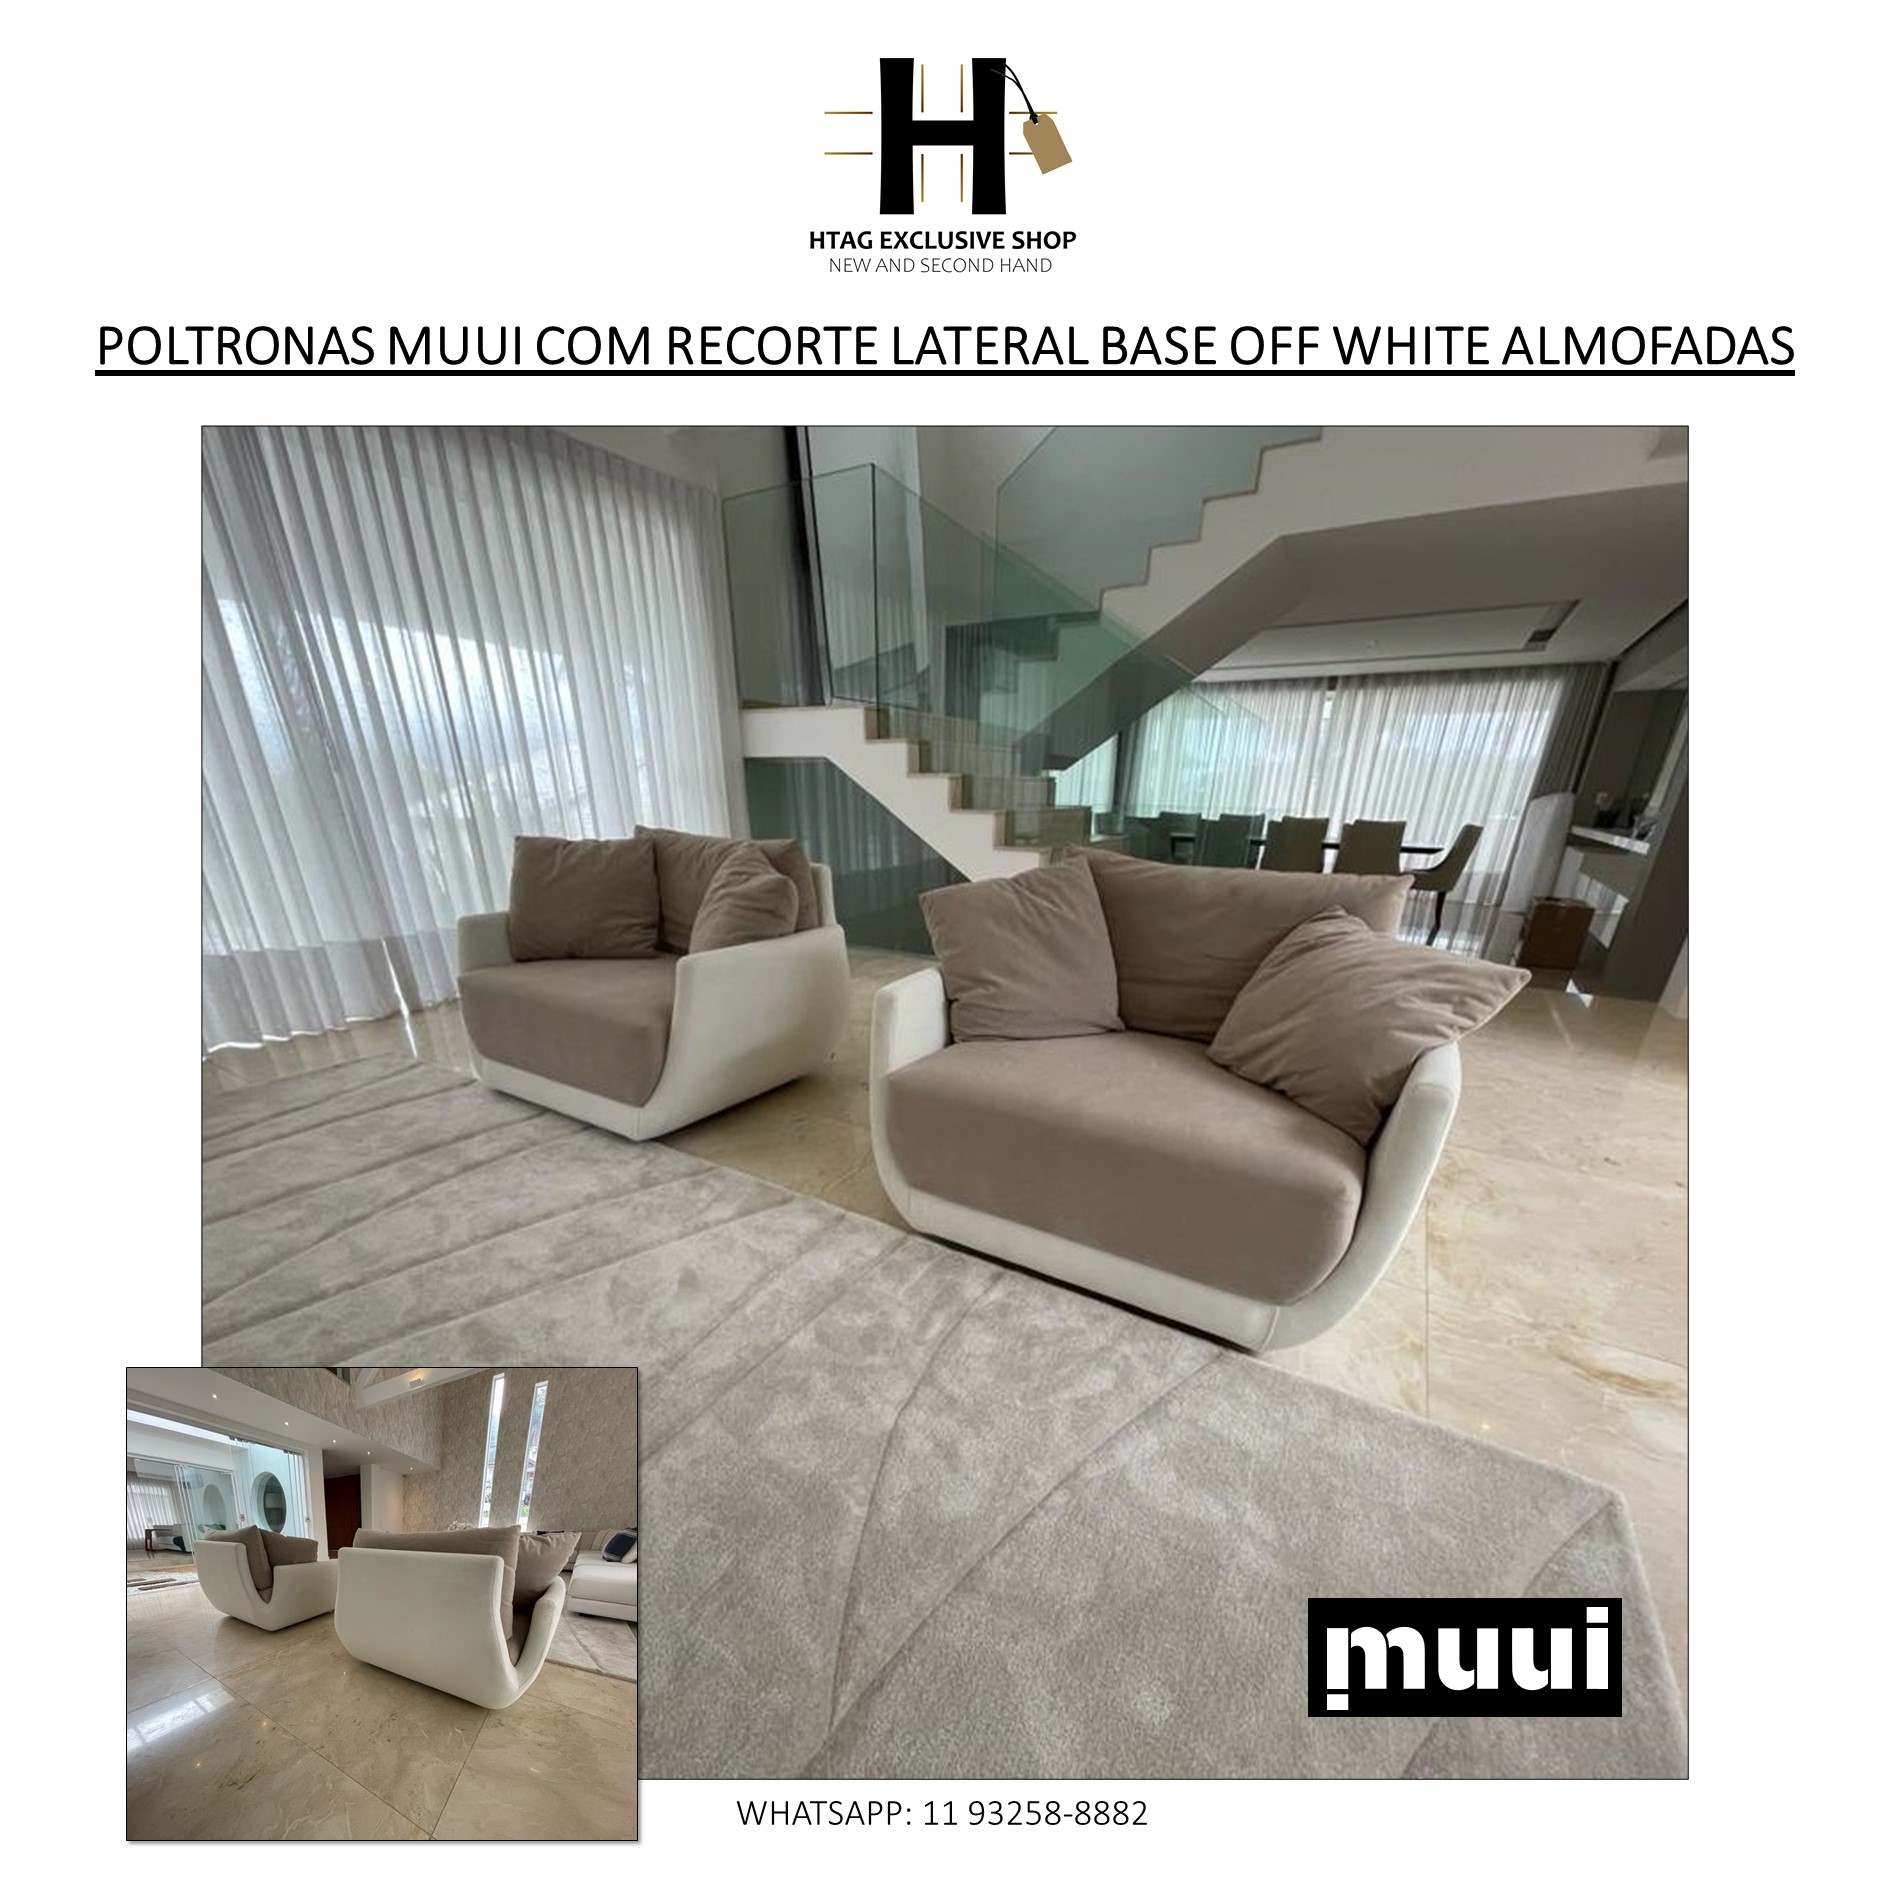 POLTRONAS MUUI DALVA COM RECORTE LATERAL BASE OFF WHITE - HTAG EXCLUSIVE  SHOP - New & Second Hand